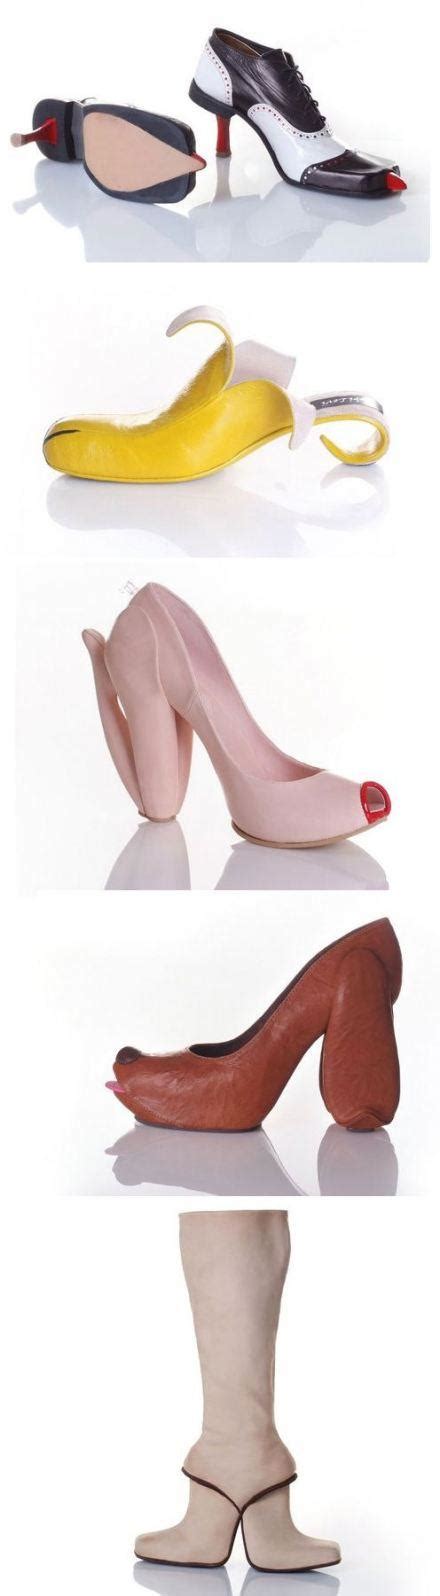 Les Chaussures Insolites Du Cr Ateur Kobi Levi Paperblog